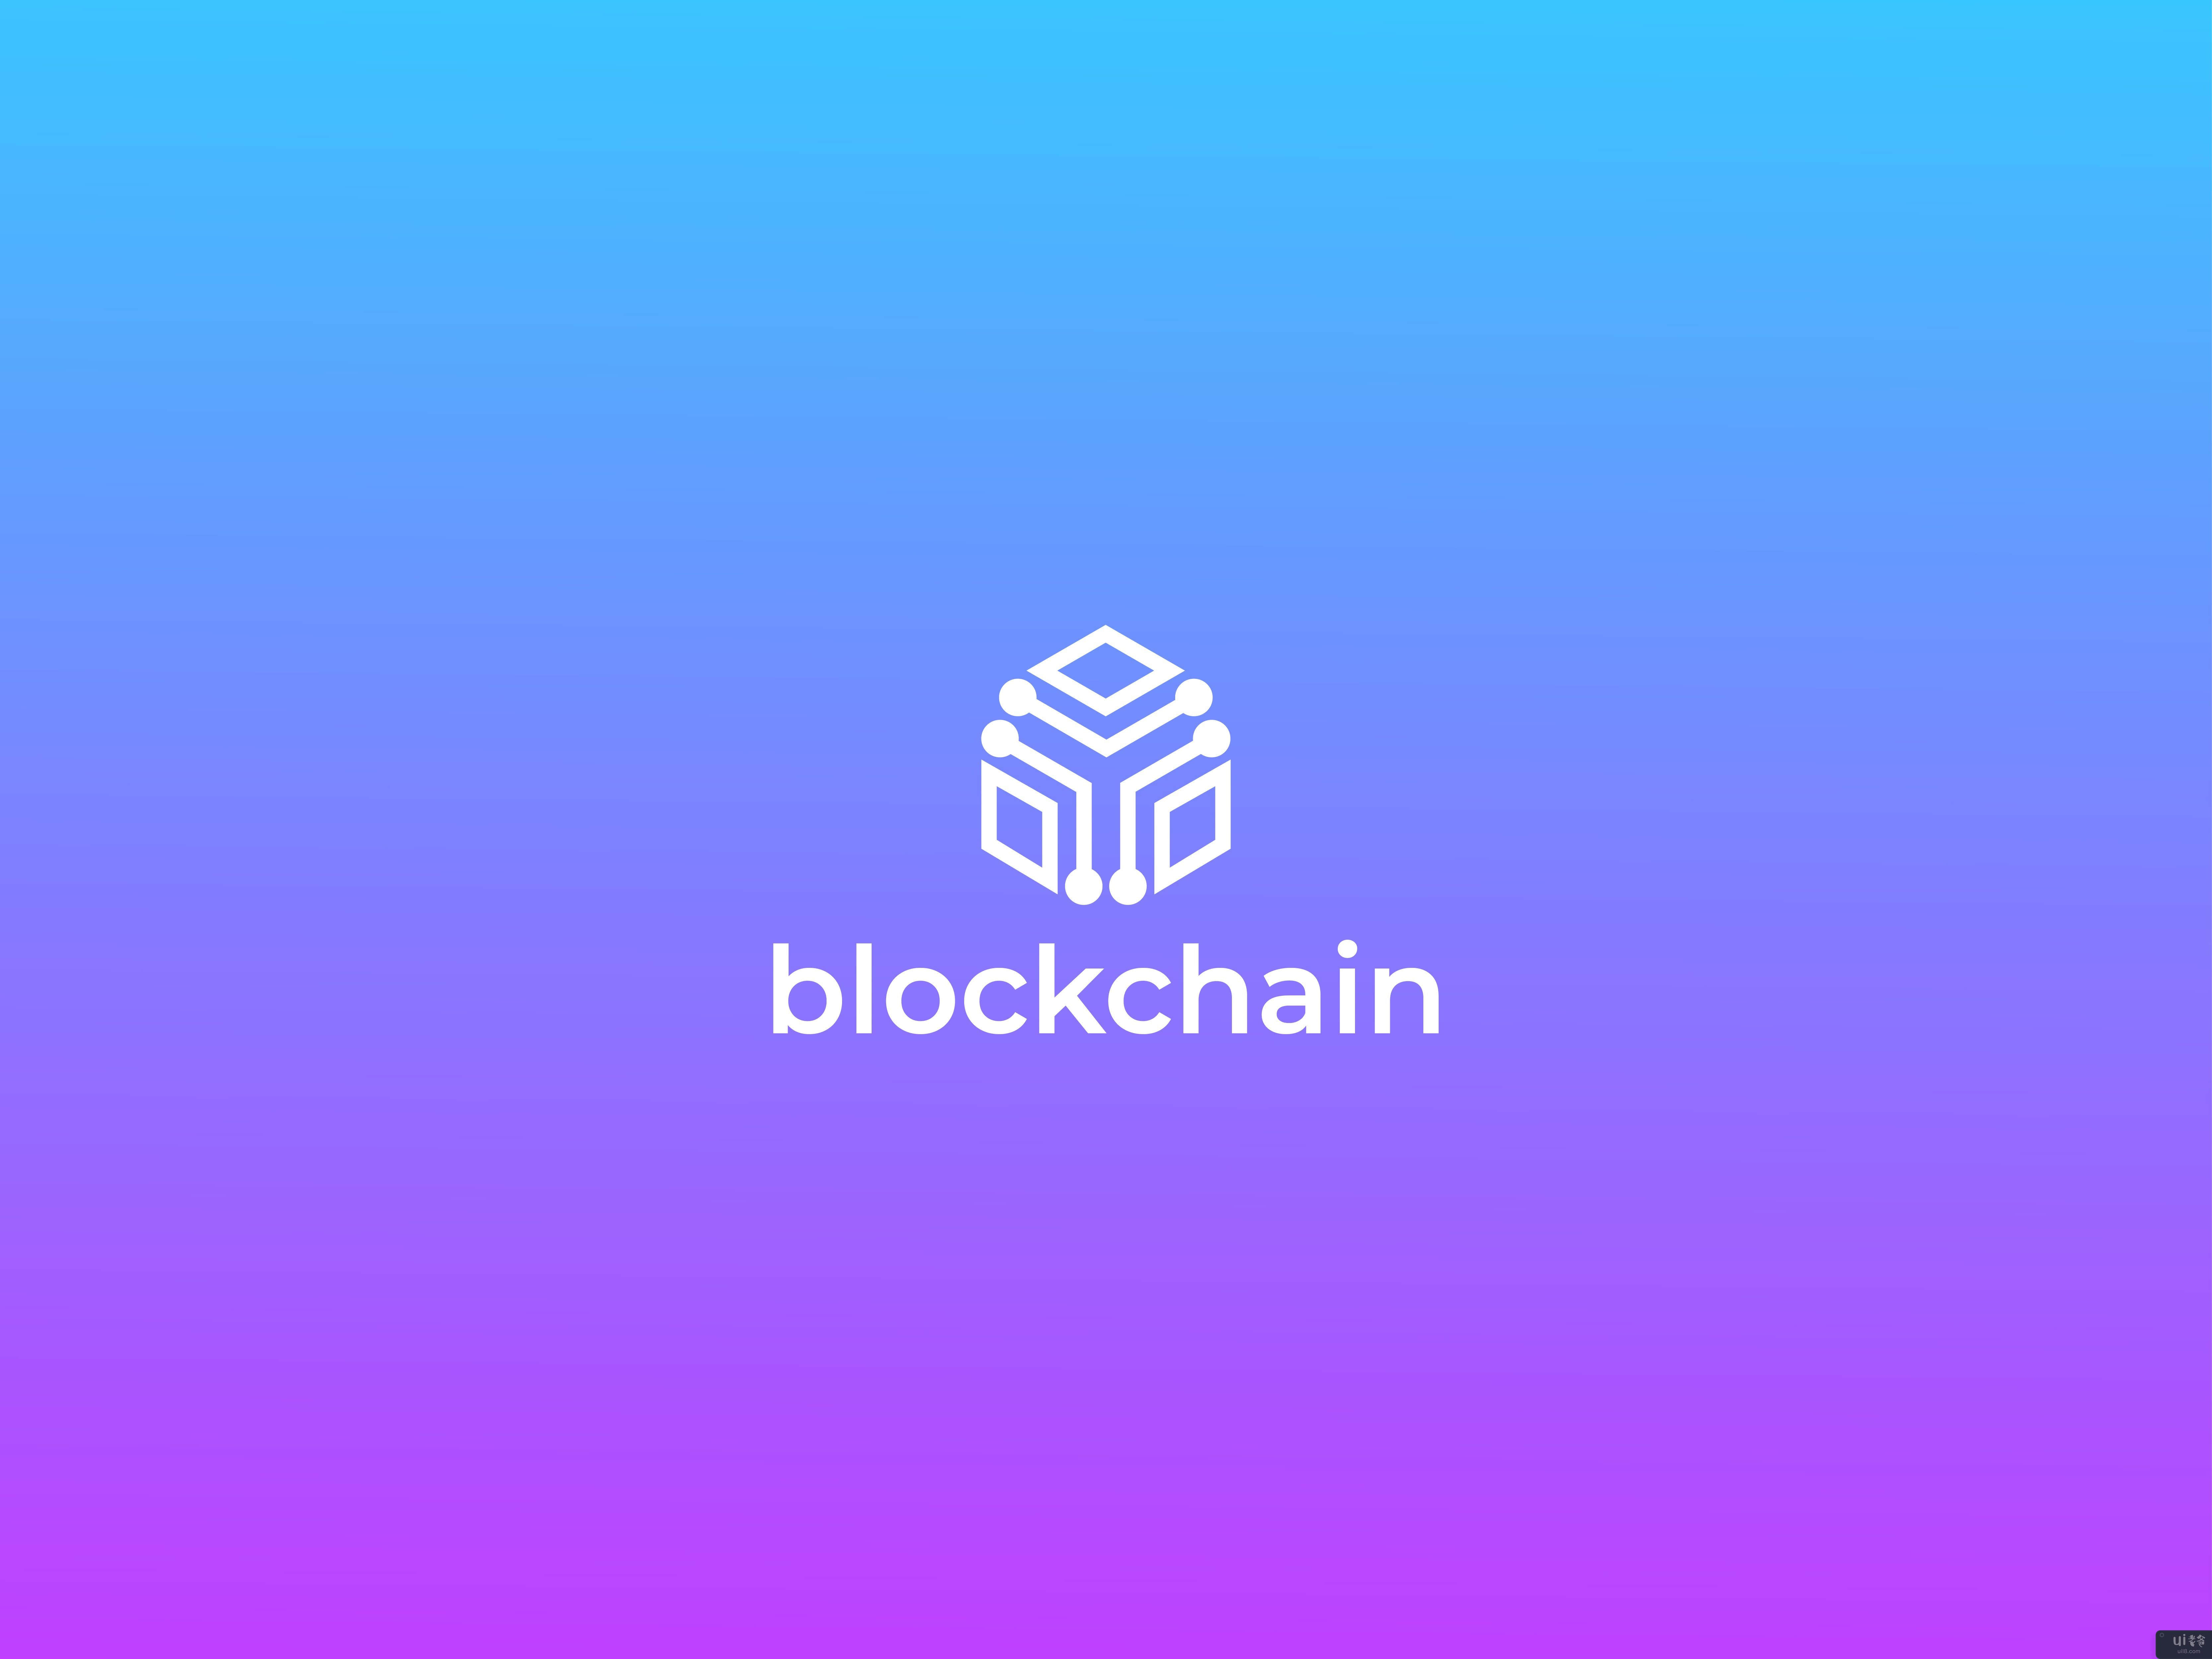 区块链现代标志设计模板(Blockchain Modern Logo Design Template)插图2